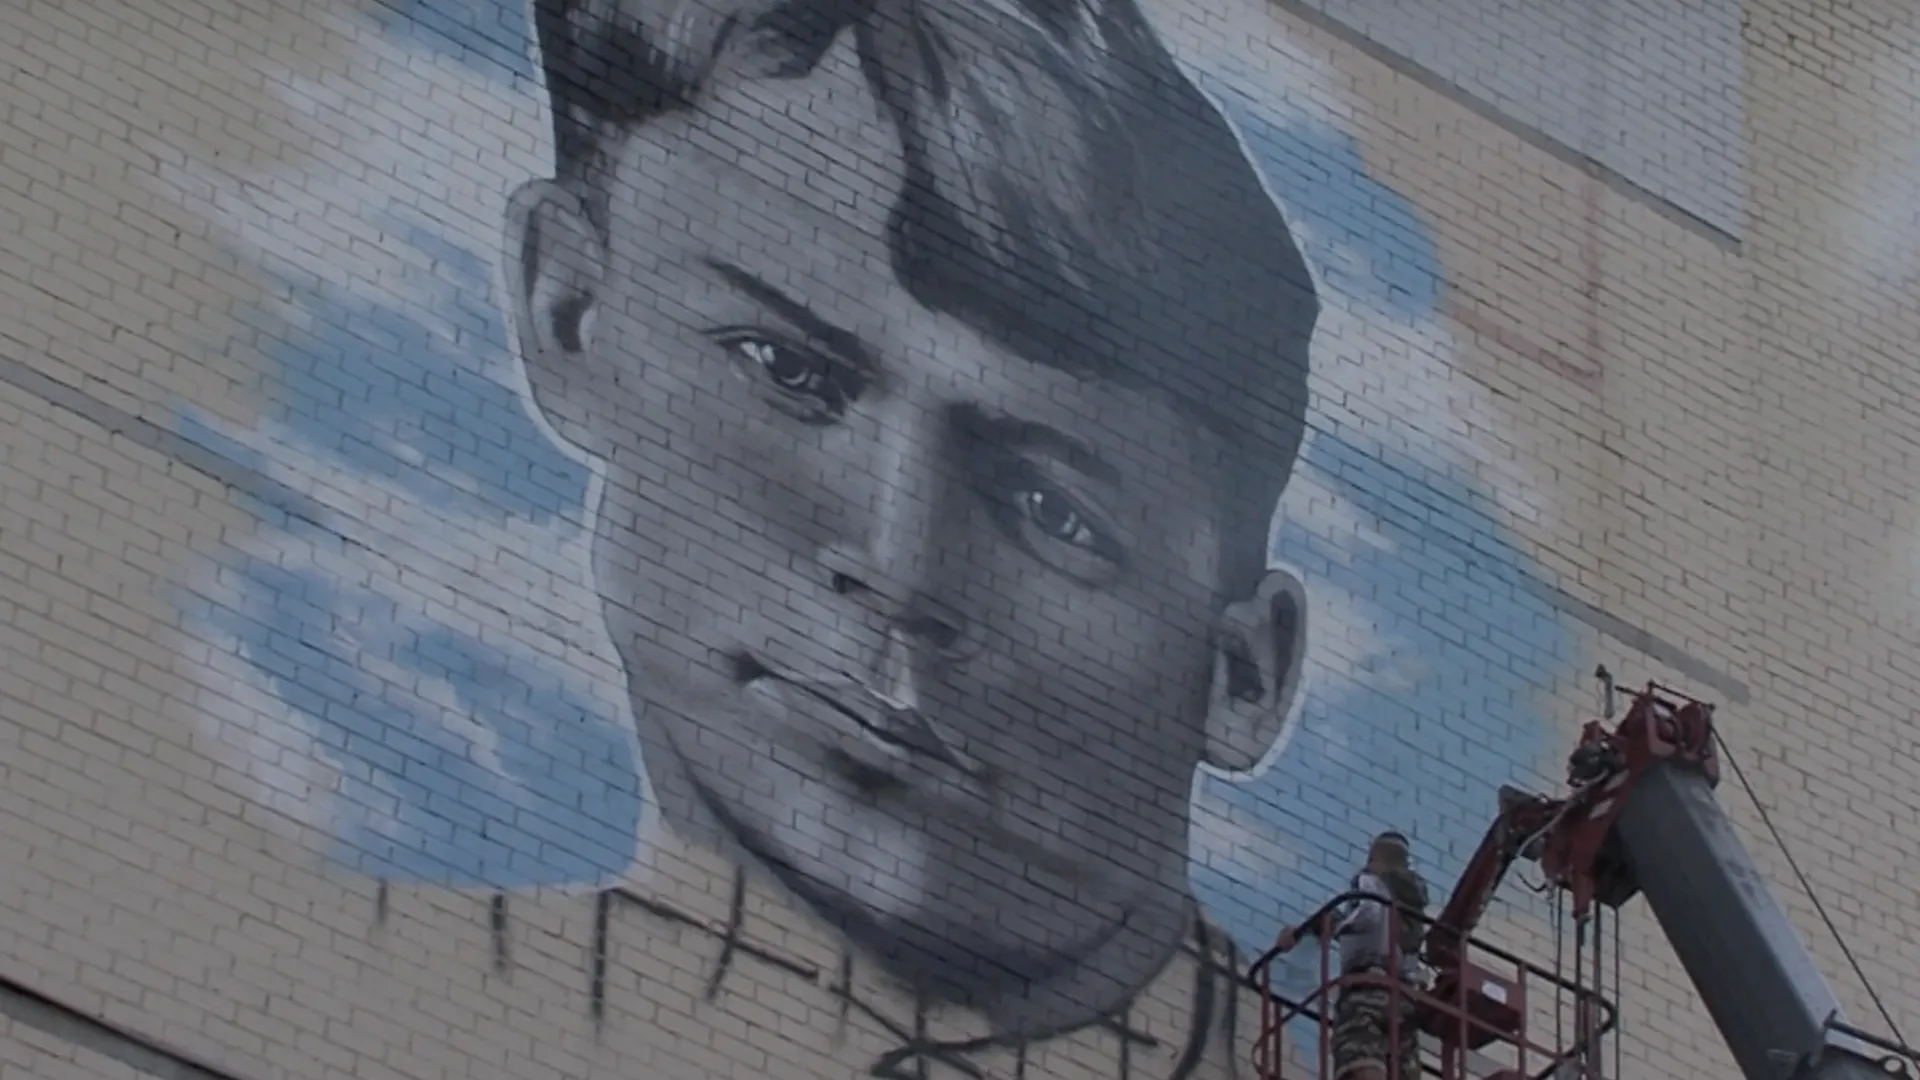 Граффити-портрет Есенина появился на фасаде дома в Луховицах